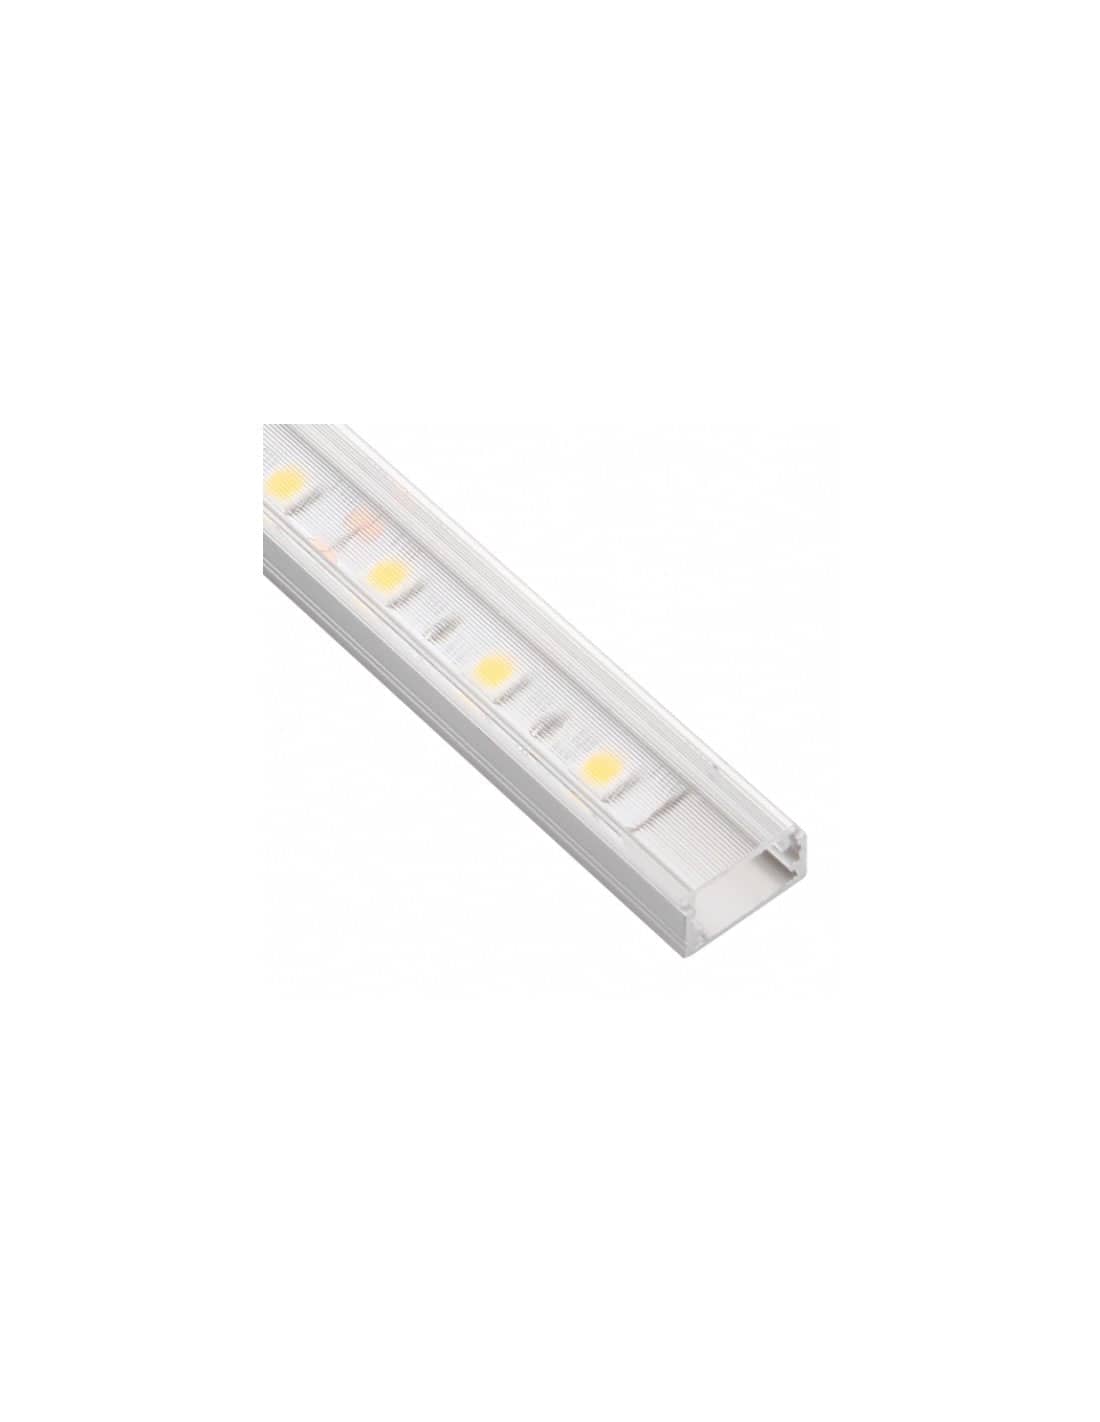 LED Profile LINE XL 1m Aluminum ( Transparent )    PROF-LINEXL-TR-1M-W